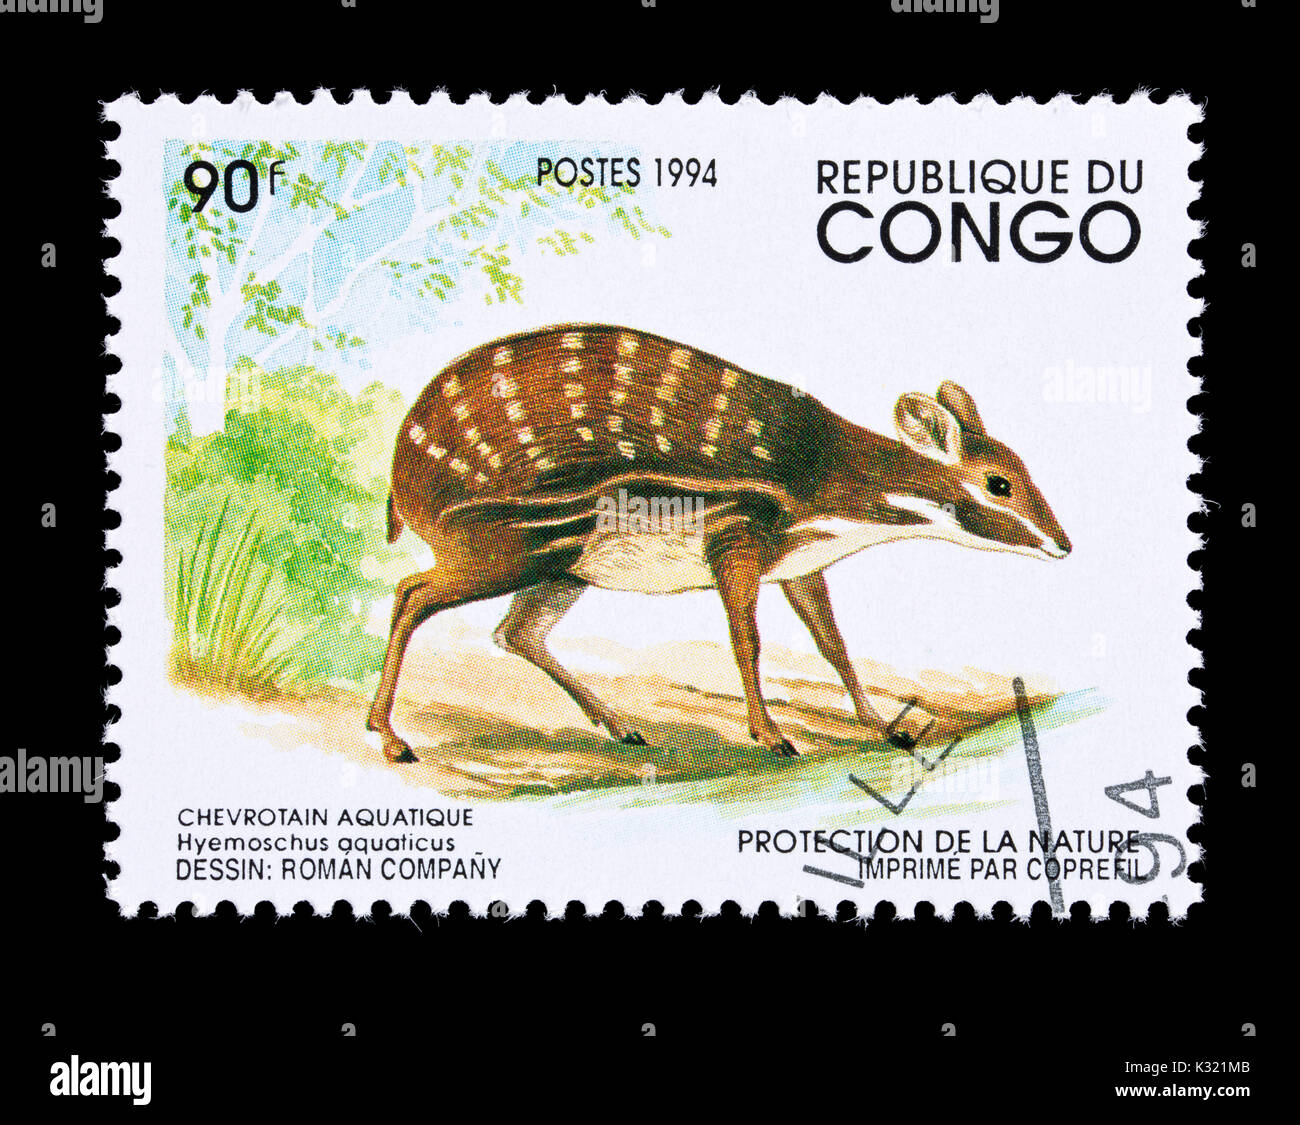 Timbre-poste de Congo représentant un chevrotain ou de l'eau (Hyemoschus aquaticus fanged deer) Banque D'Images